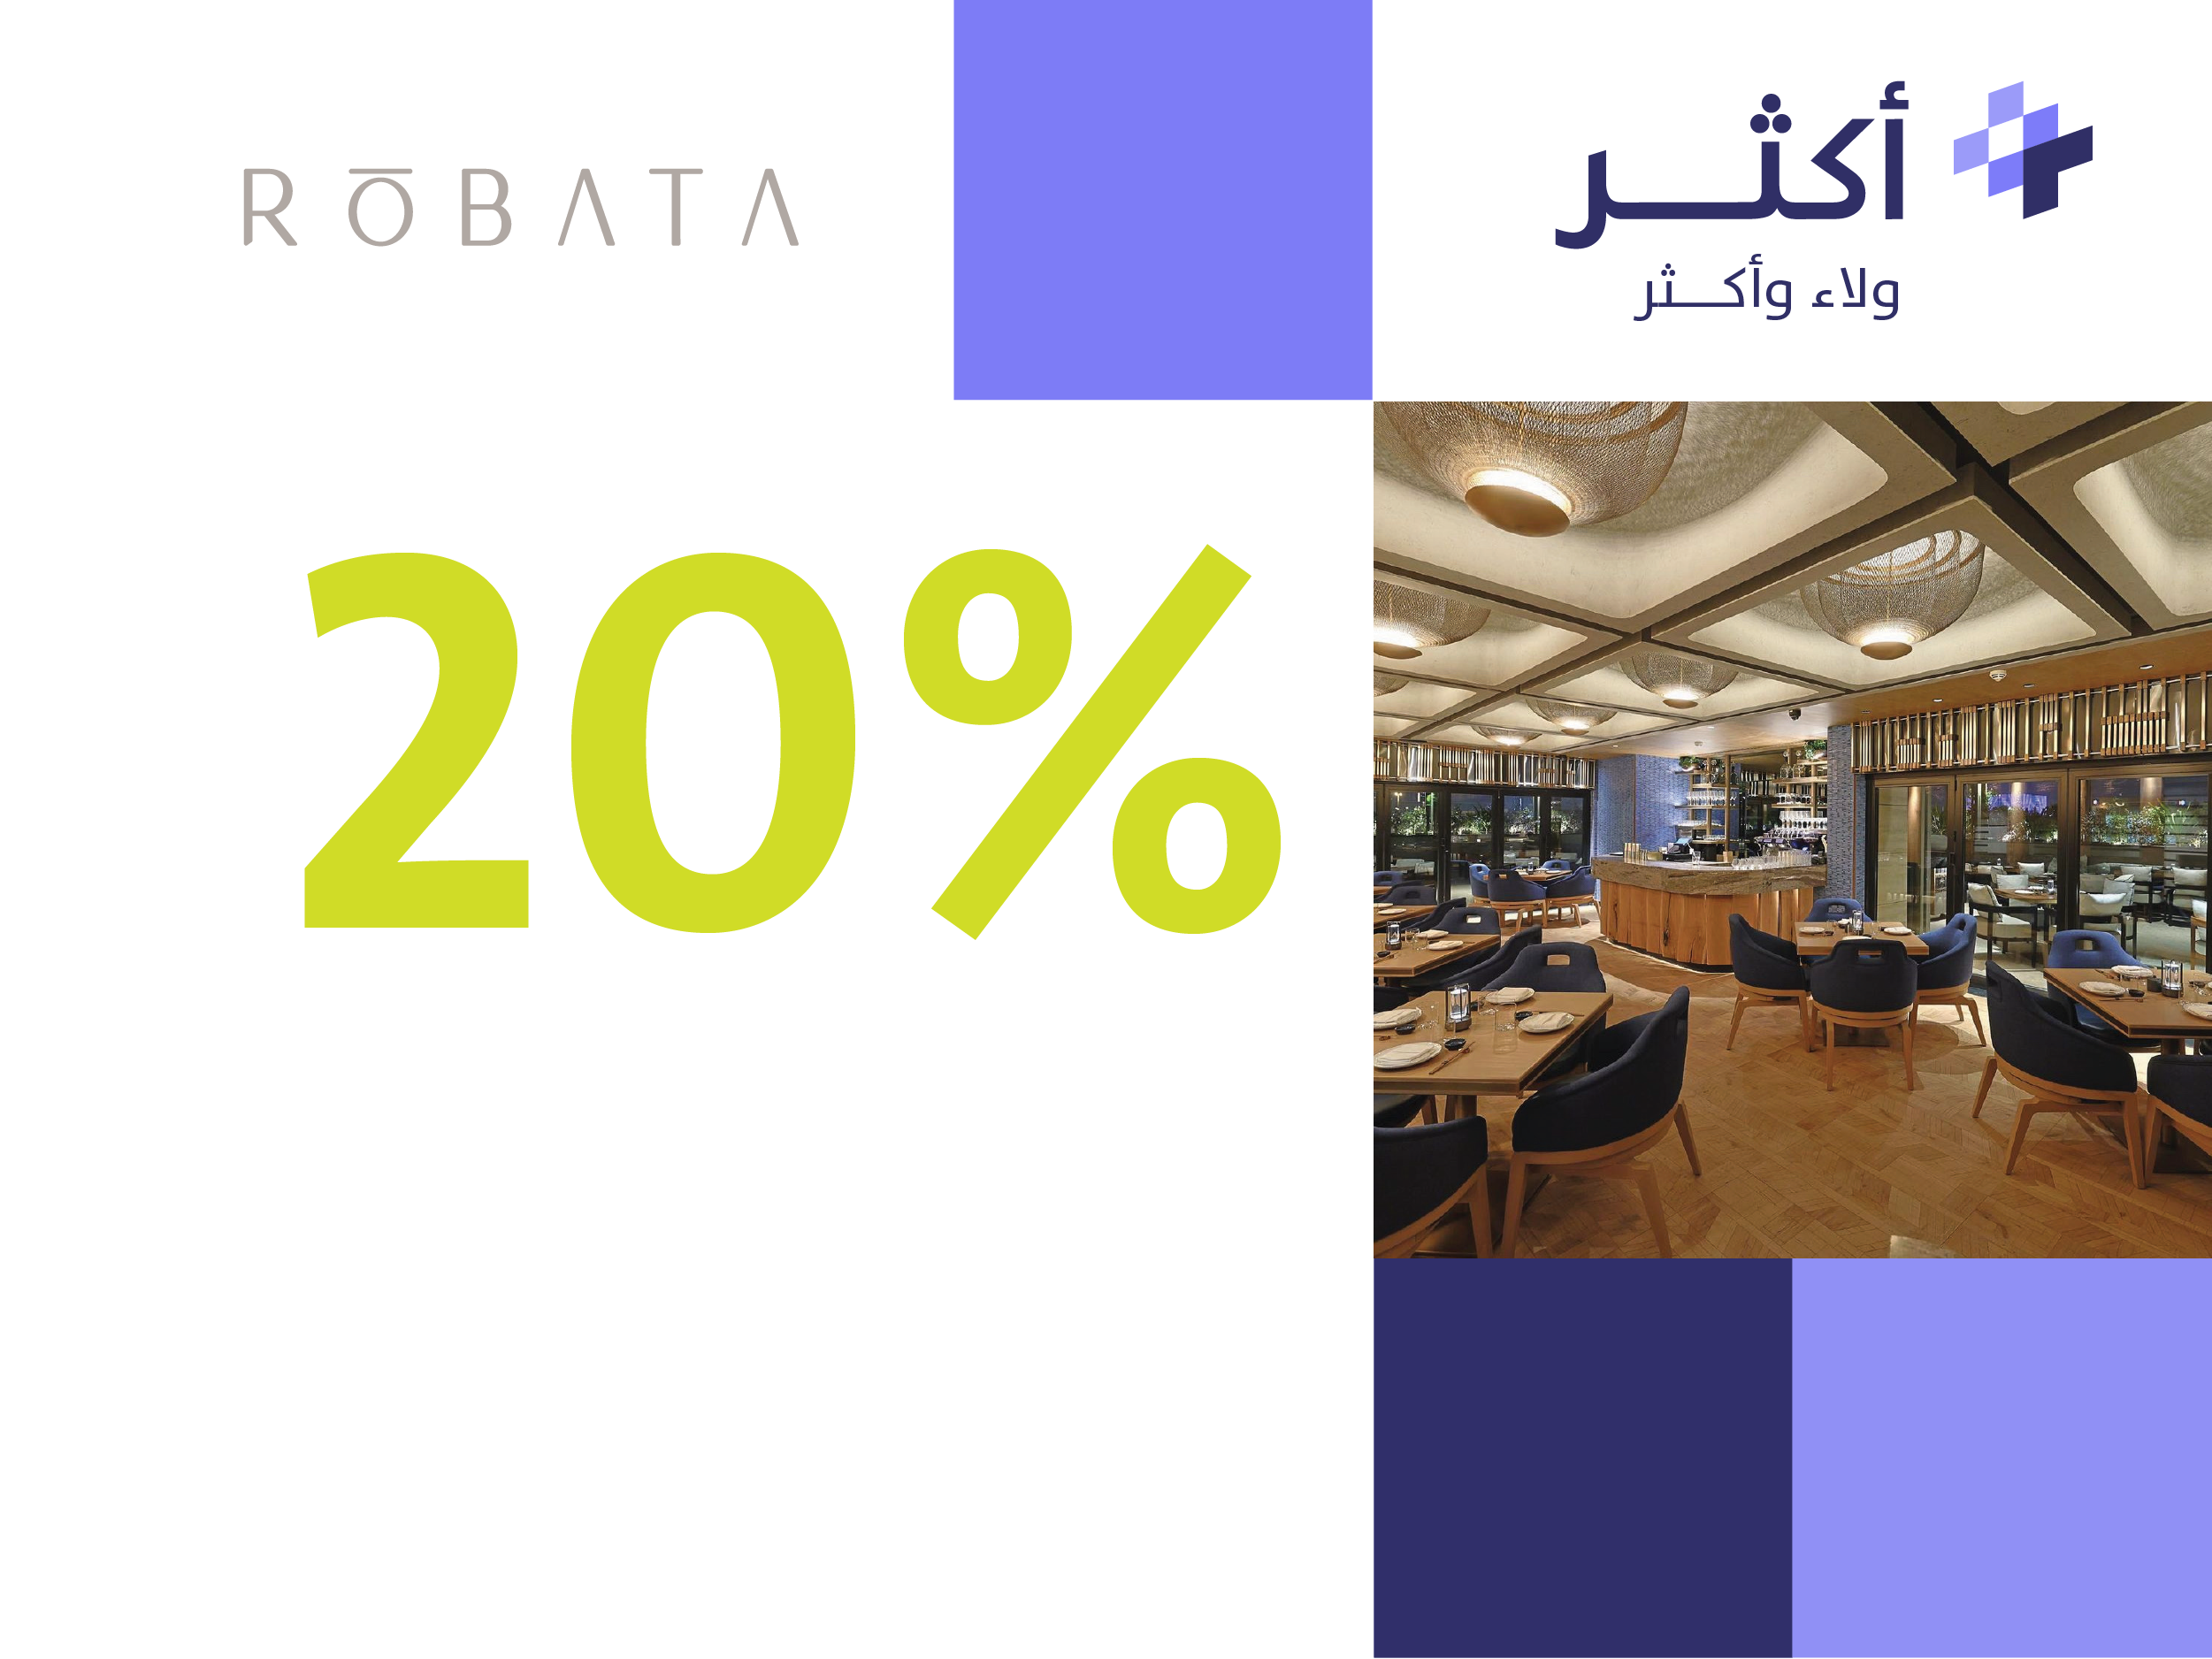 Robata Riyadh  Restaurant